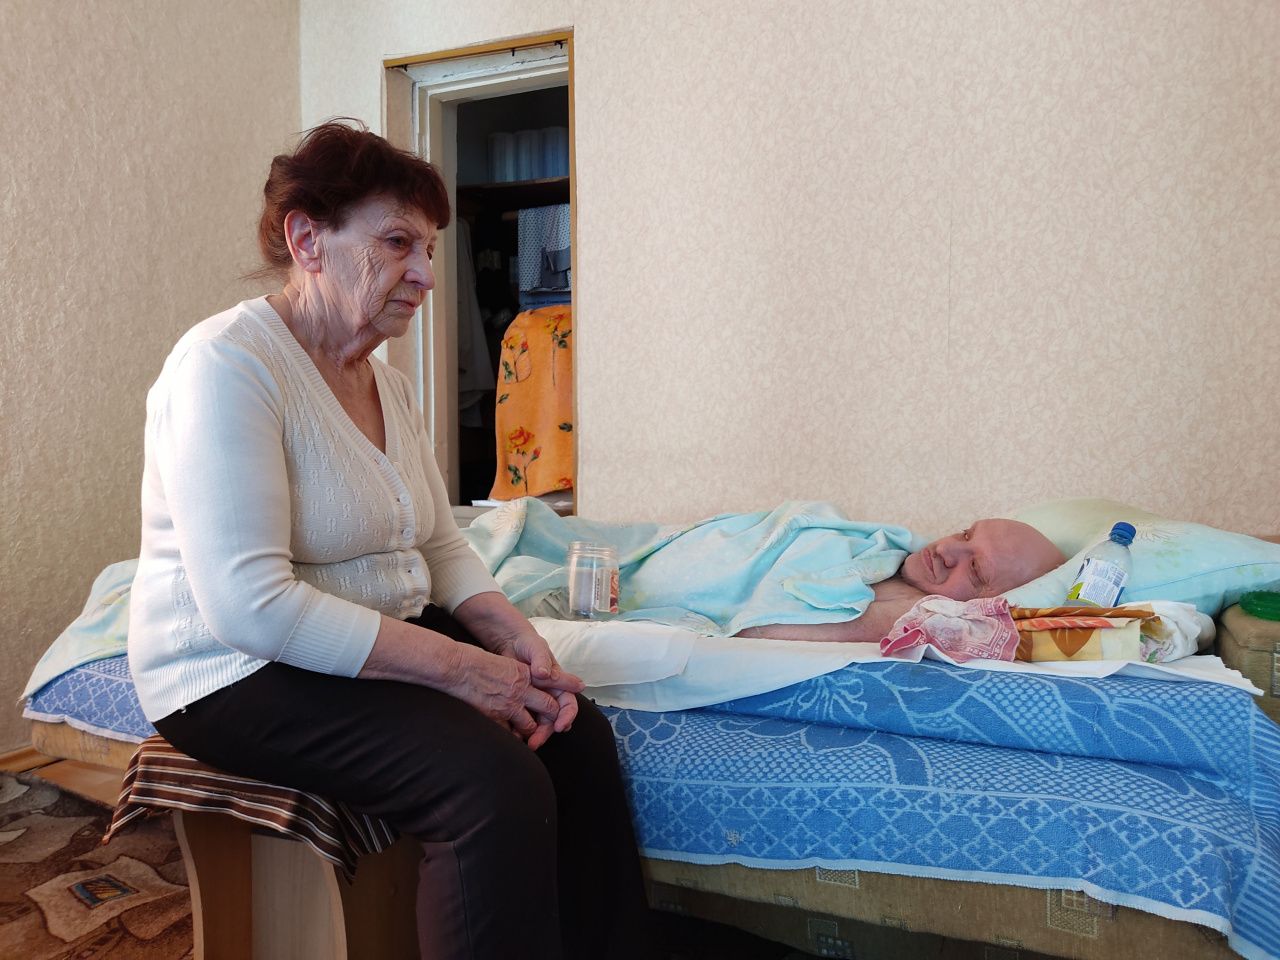 Прокурор Серова через суд добивается предоставления жилья для инвалида